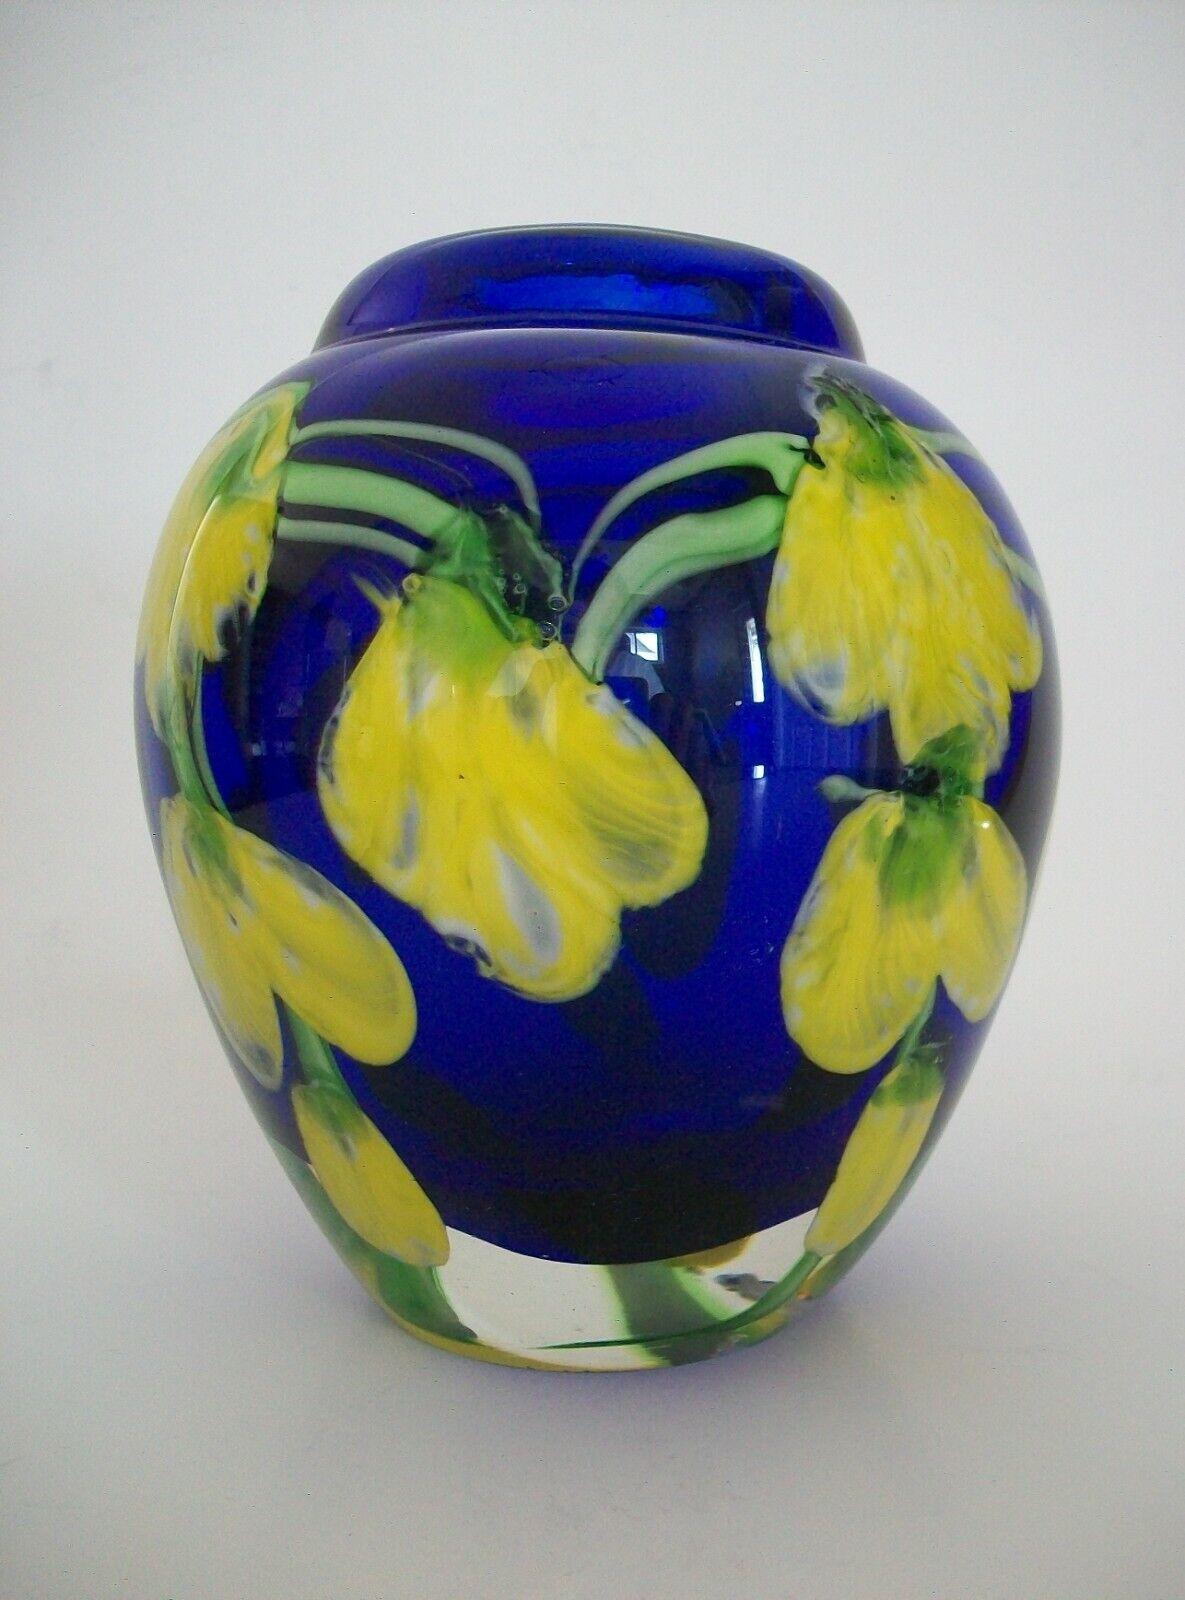 Vase vintage en verre d'art de Murano avec une 'Golden Chain Laburnum' encastrée - combinaison de couleurs bleue et jaune frappante - restes d'une ancienne étiquette en papier ou en feuille à la base - Italie - vers les années 1970.

Excellent